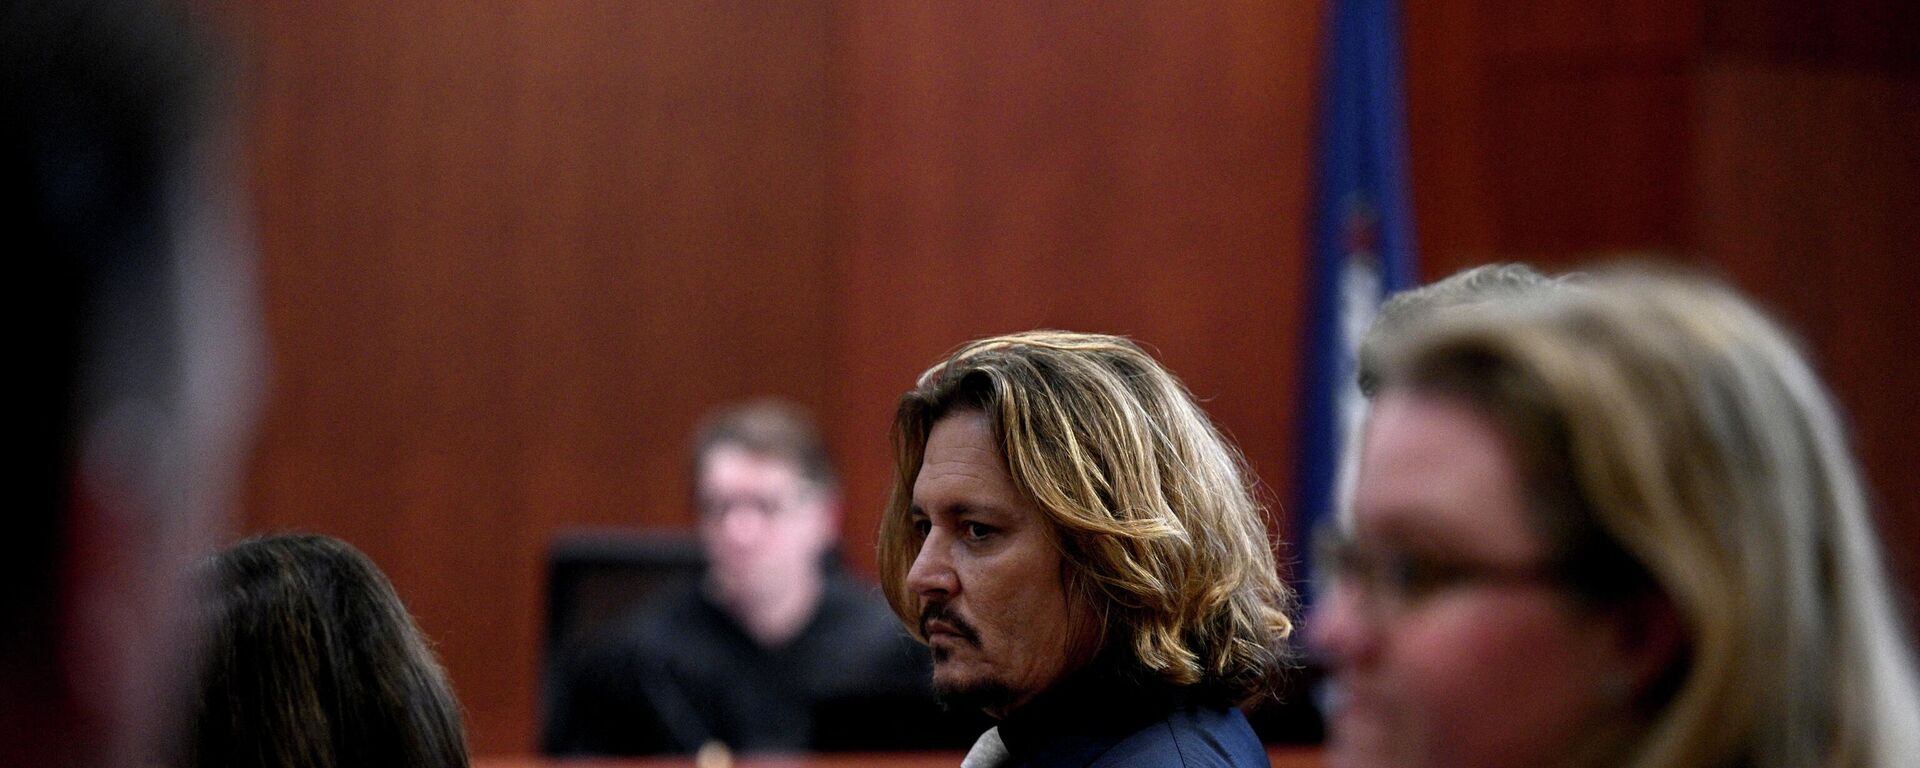 Johnny Depp, Amber Heard'e 50 milyon dolar tazminat talebiyle açtığı iftira davasının görüldüğü mahkemede (ABD, Virgina, Fairfax, 12 Nisan 2022) - Sputnik Türkiye, 1920, 23.04.2022